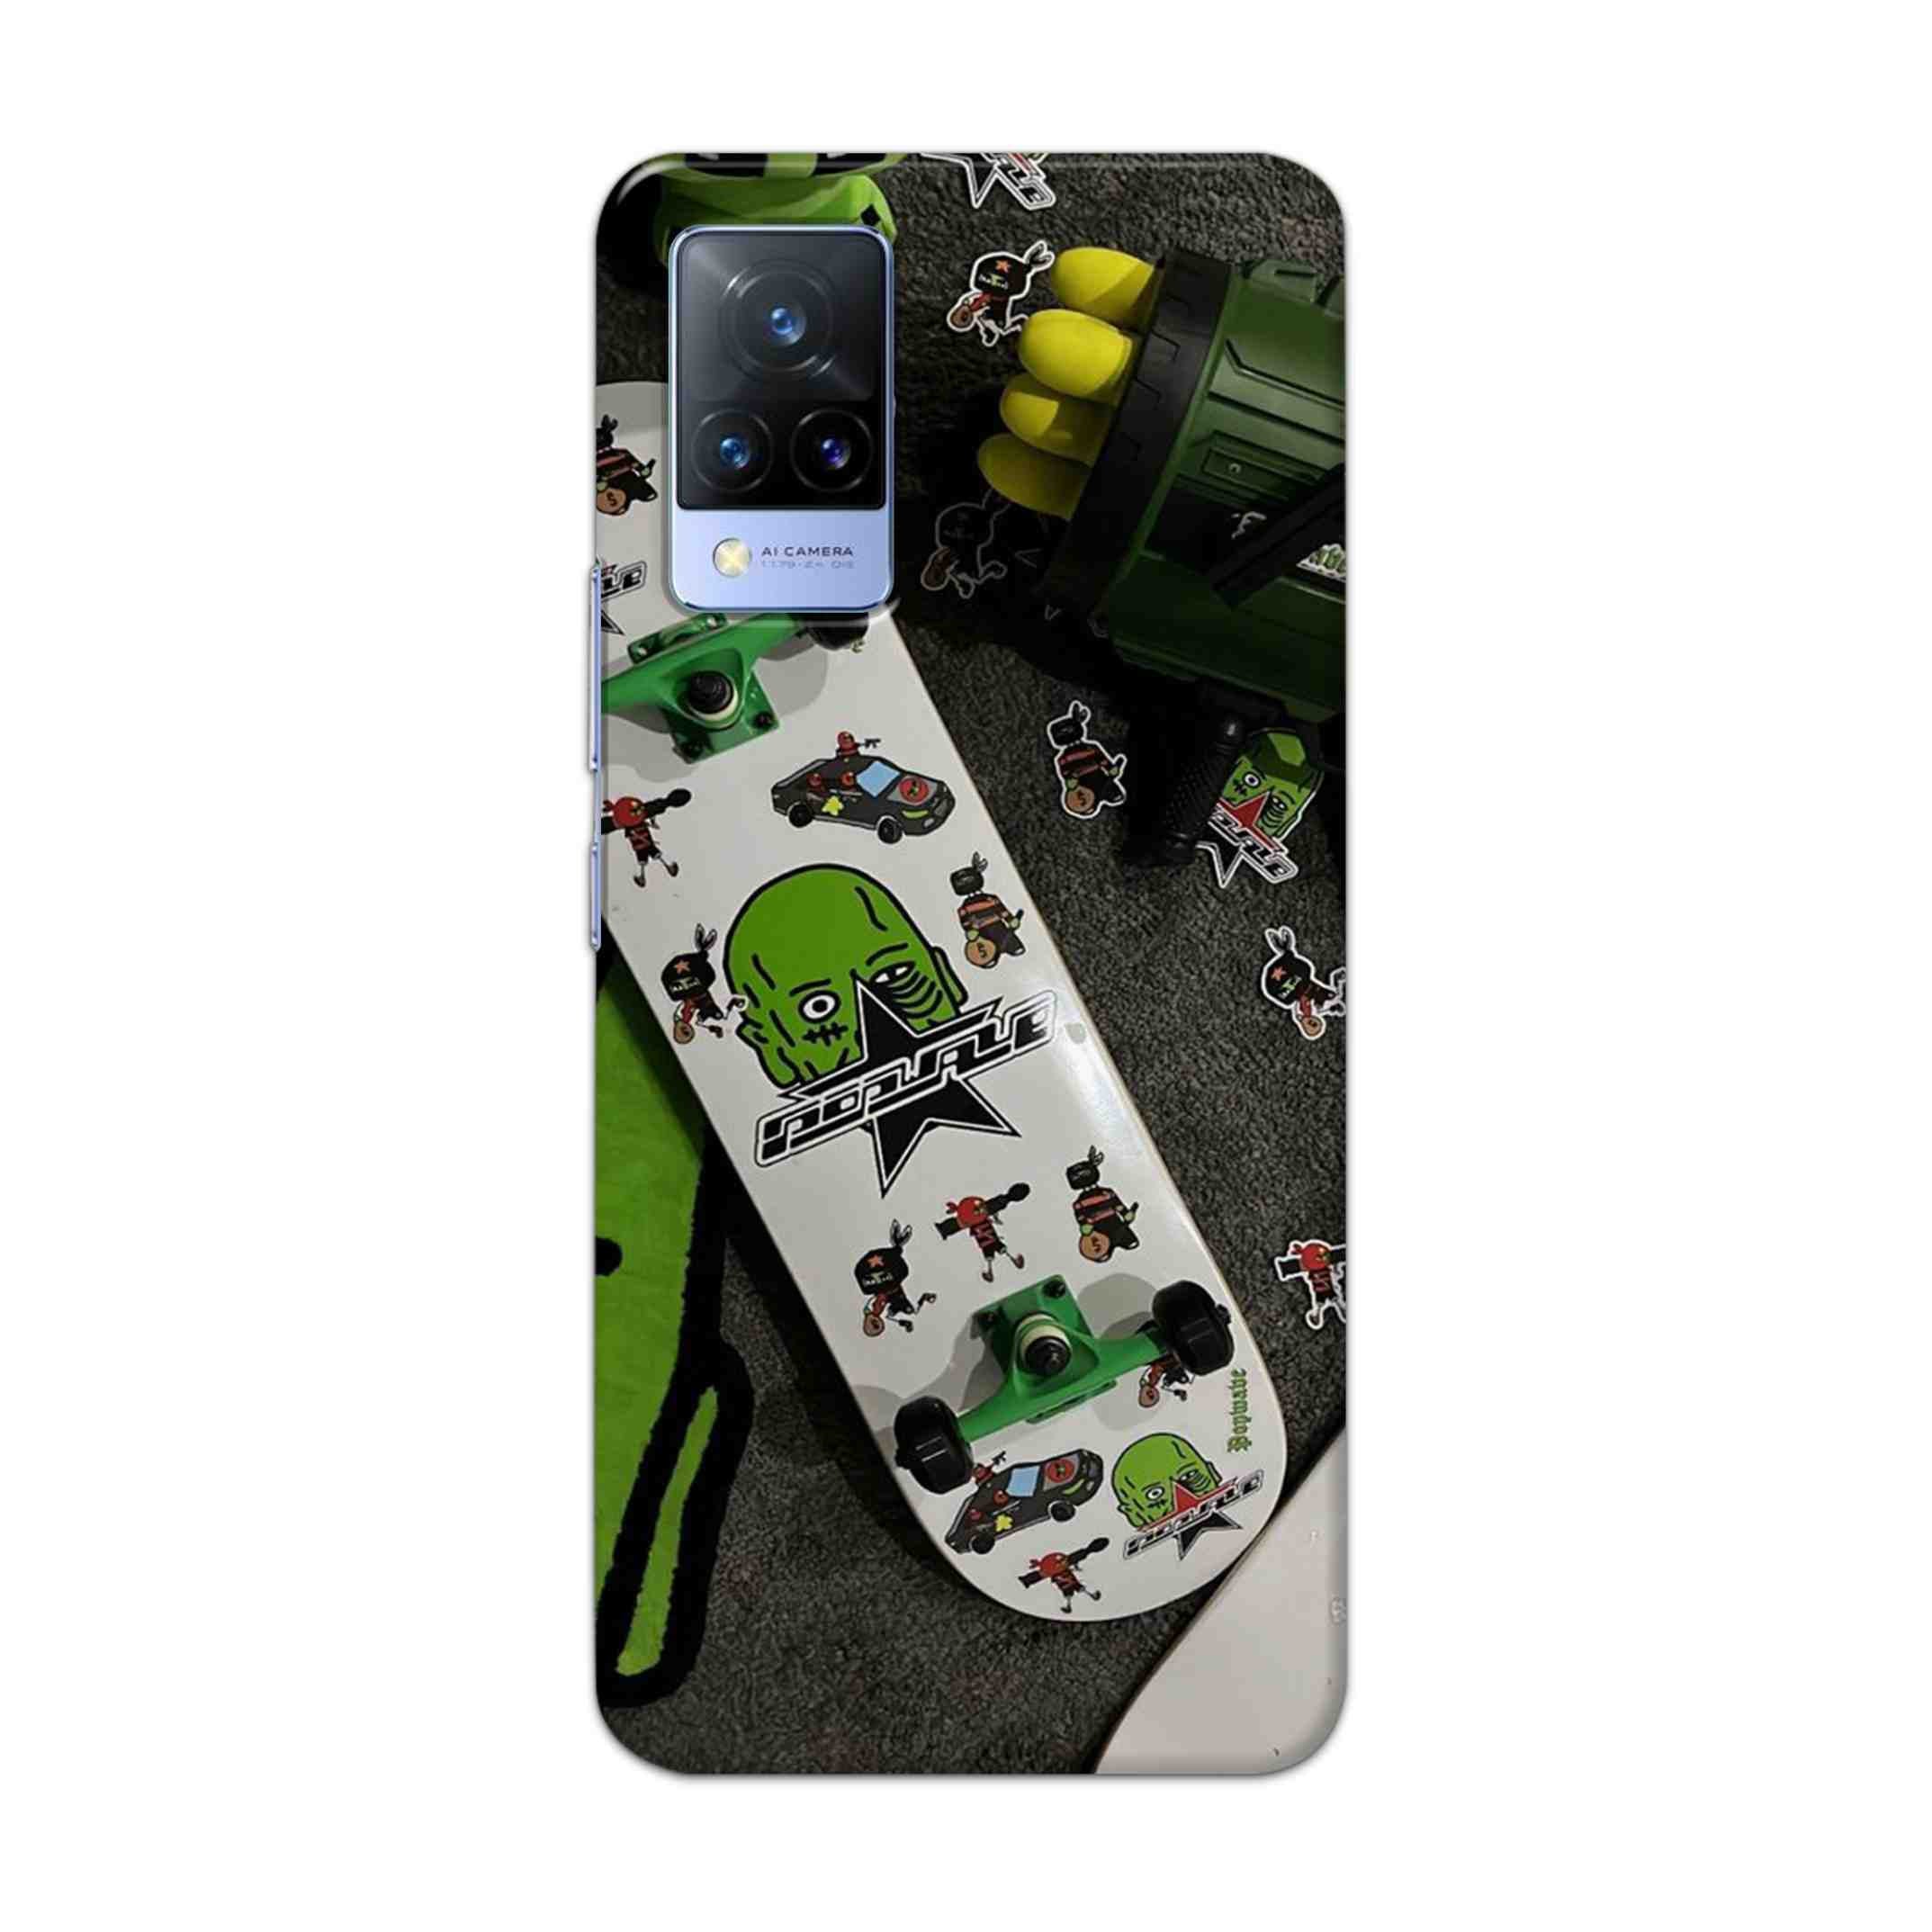 Buy Hulk Skateboard Hard Back Mobile Phone Case Cover For Vivo V21 Online